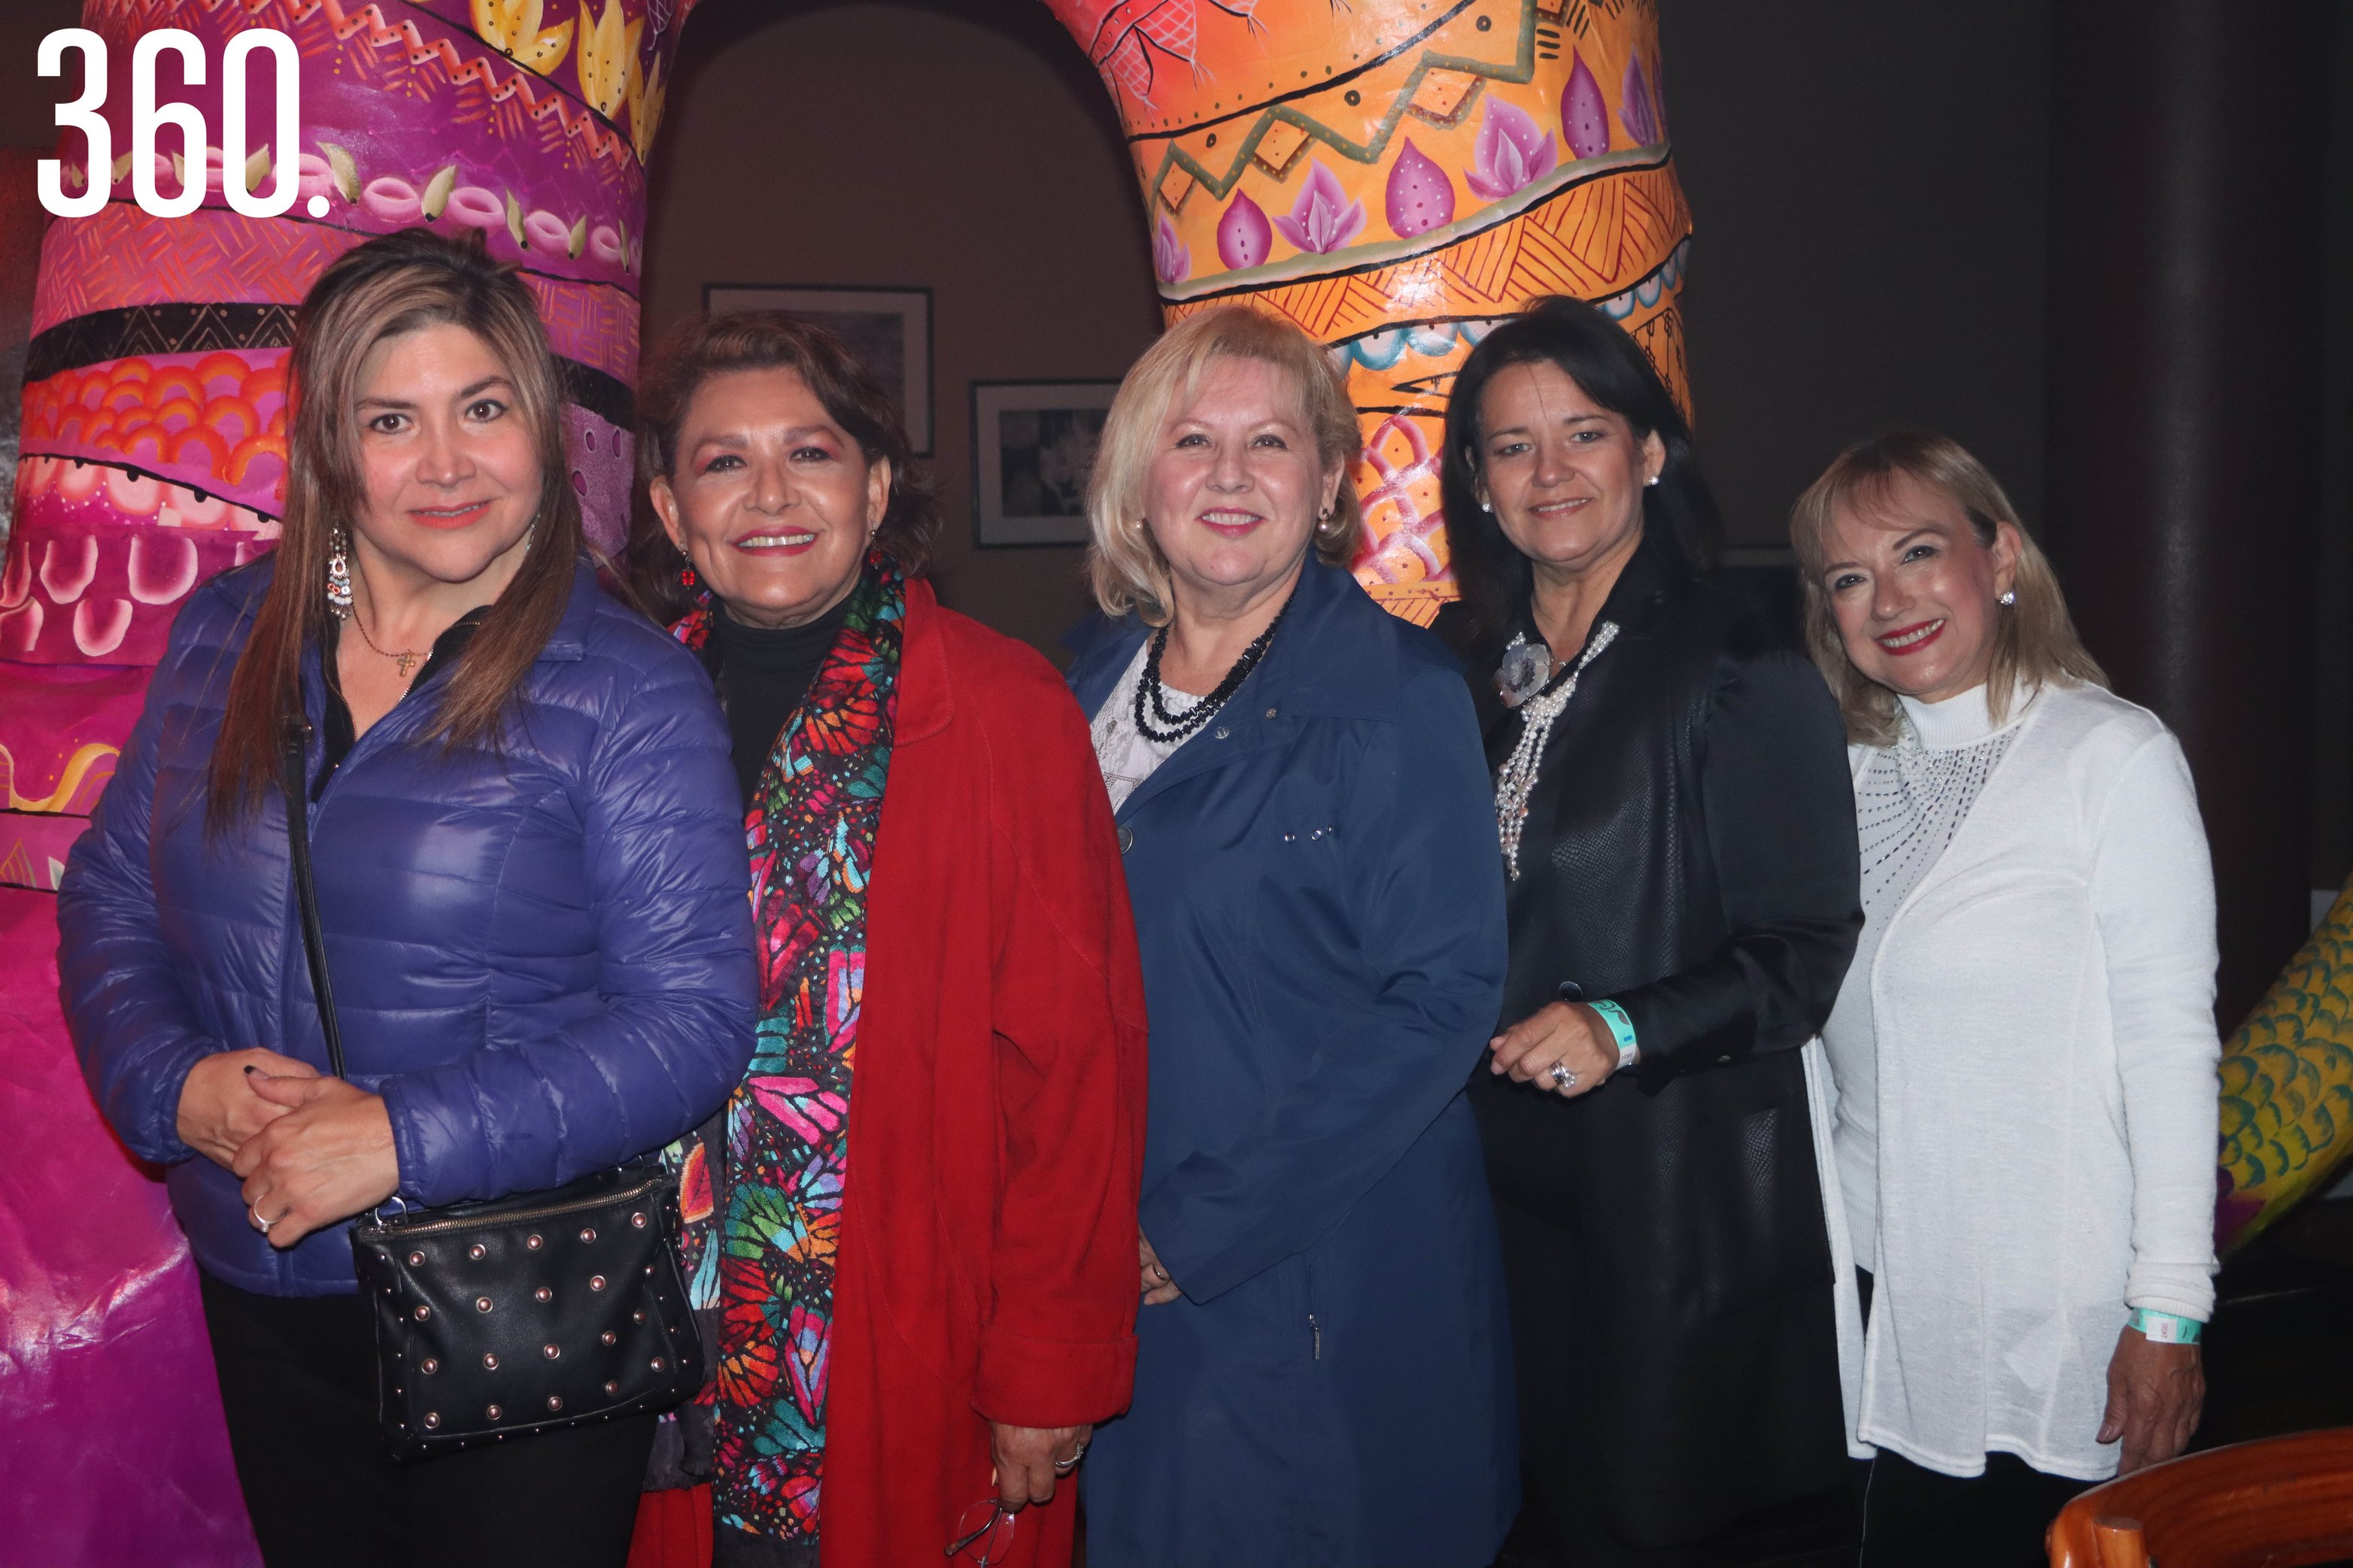 Voroca Dávila, Nicté Ruiz, Mayanin Ochoa, Sofía Ruiz y Martha Flores, creadoras de los alebrijes expuestos.